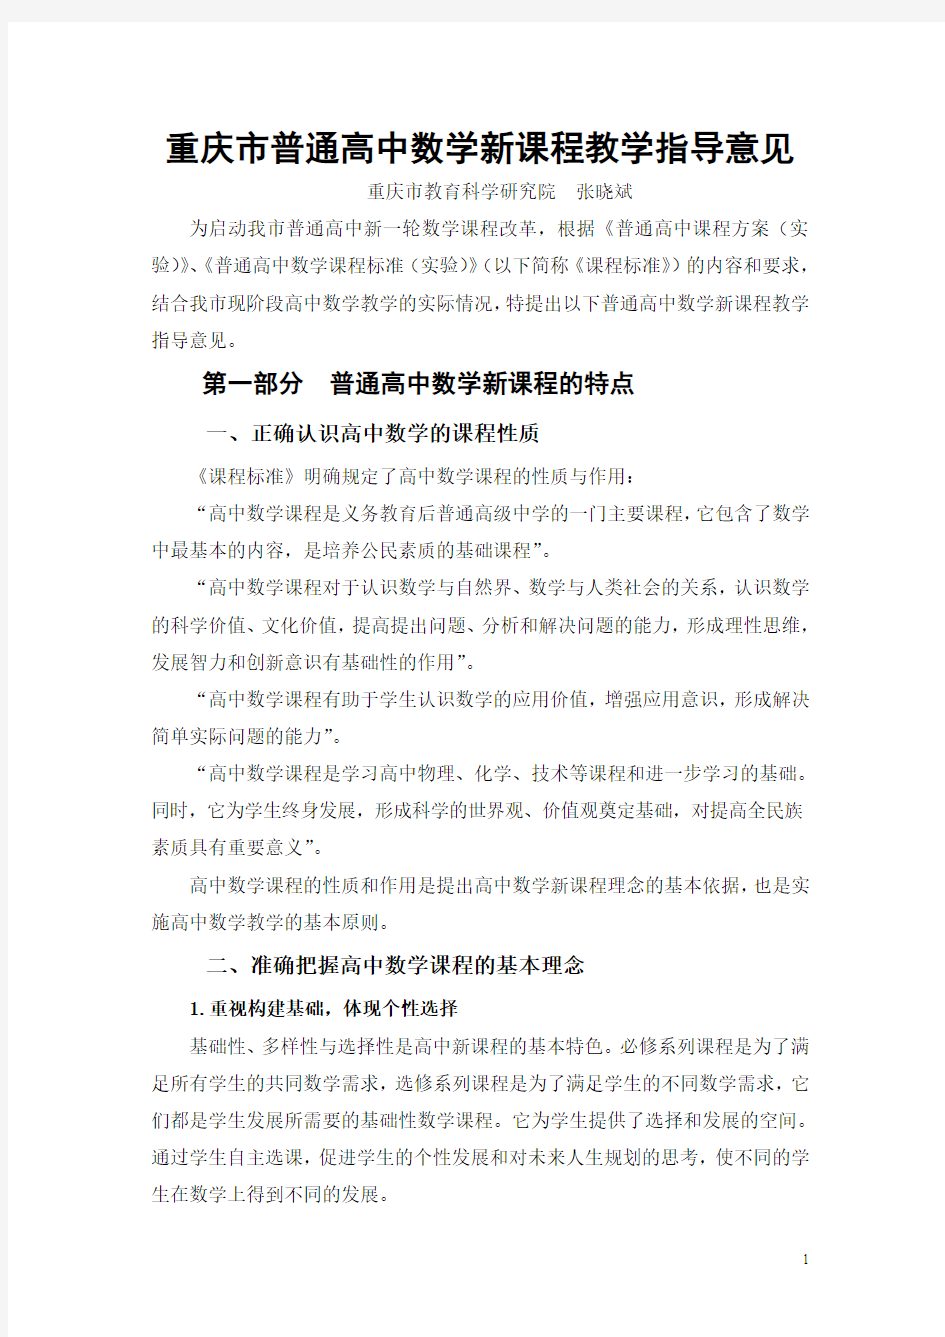 重庆市普通高中数学新课程教学指导意见